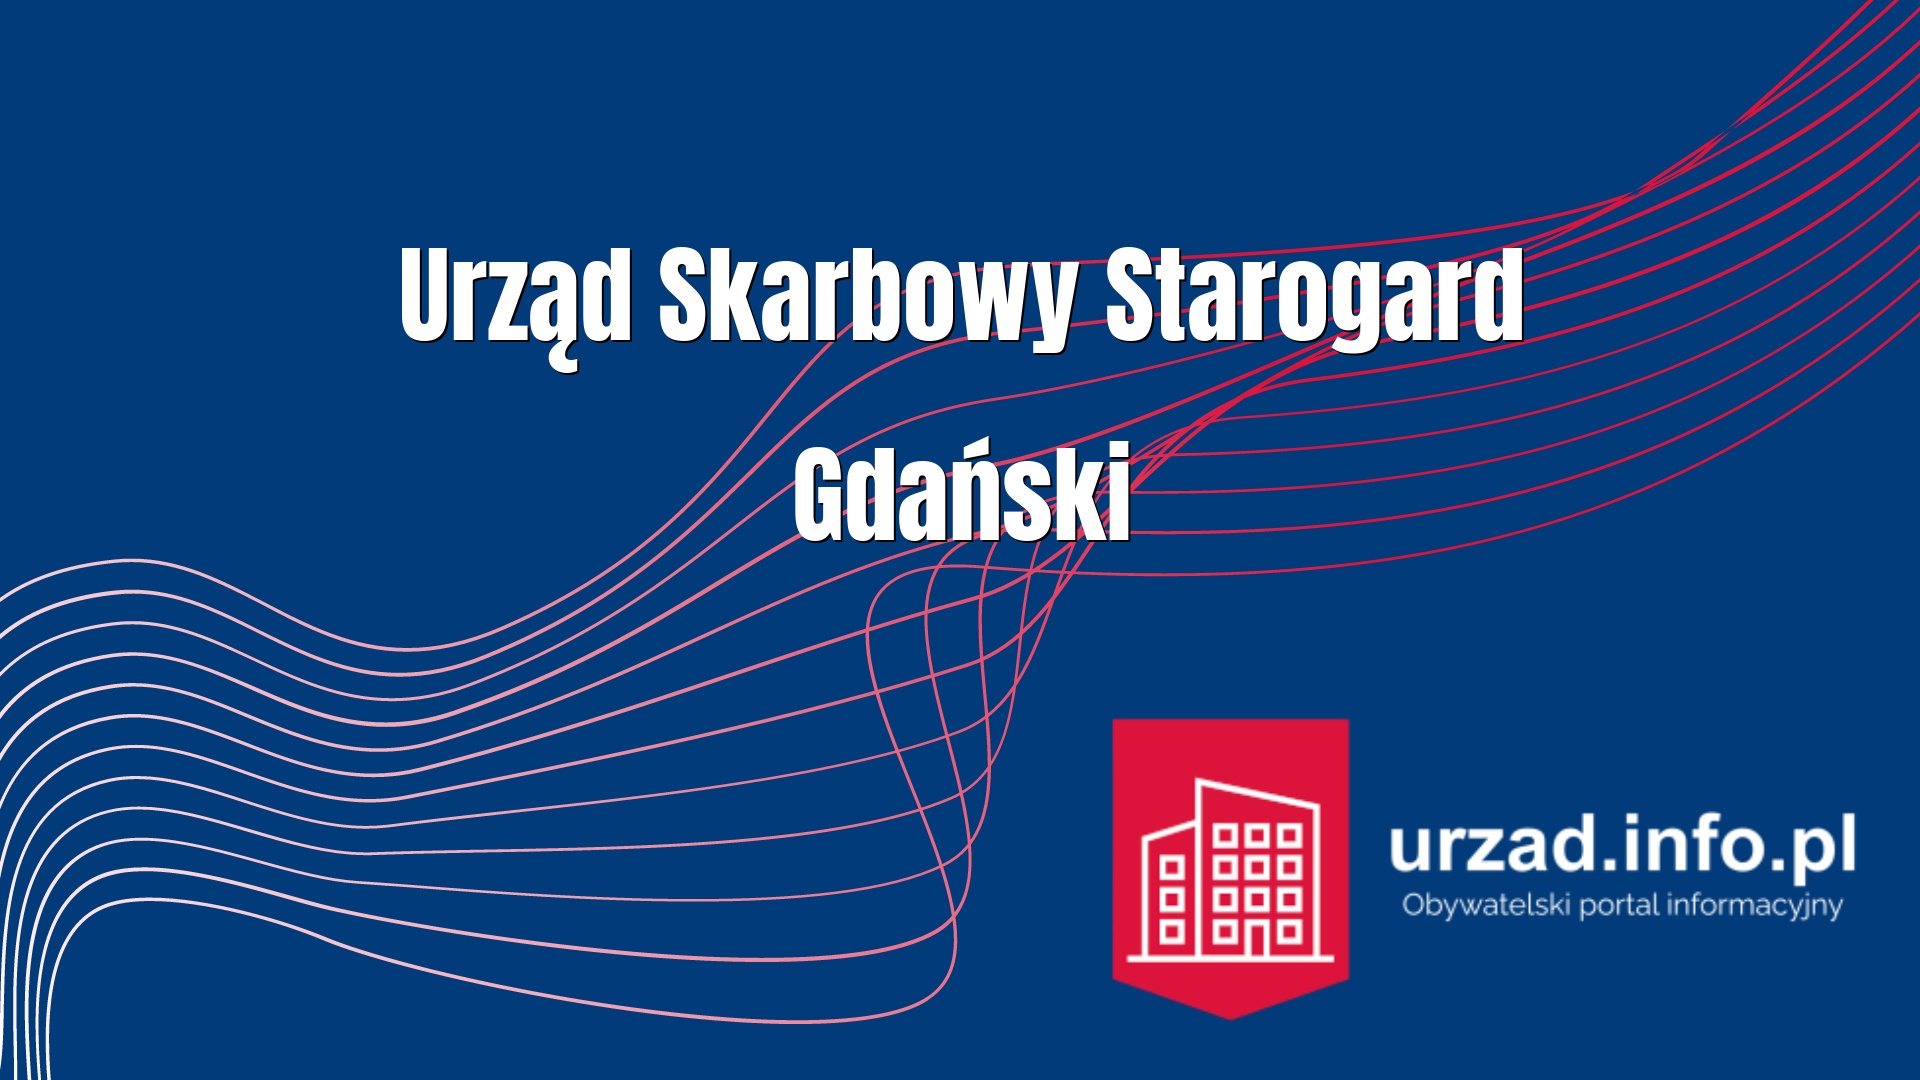 Urząd Skarbowy Starogard Gdański